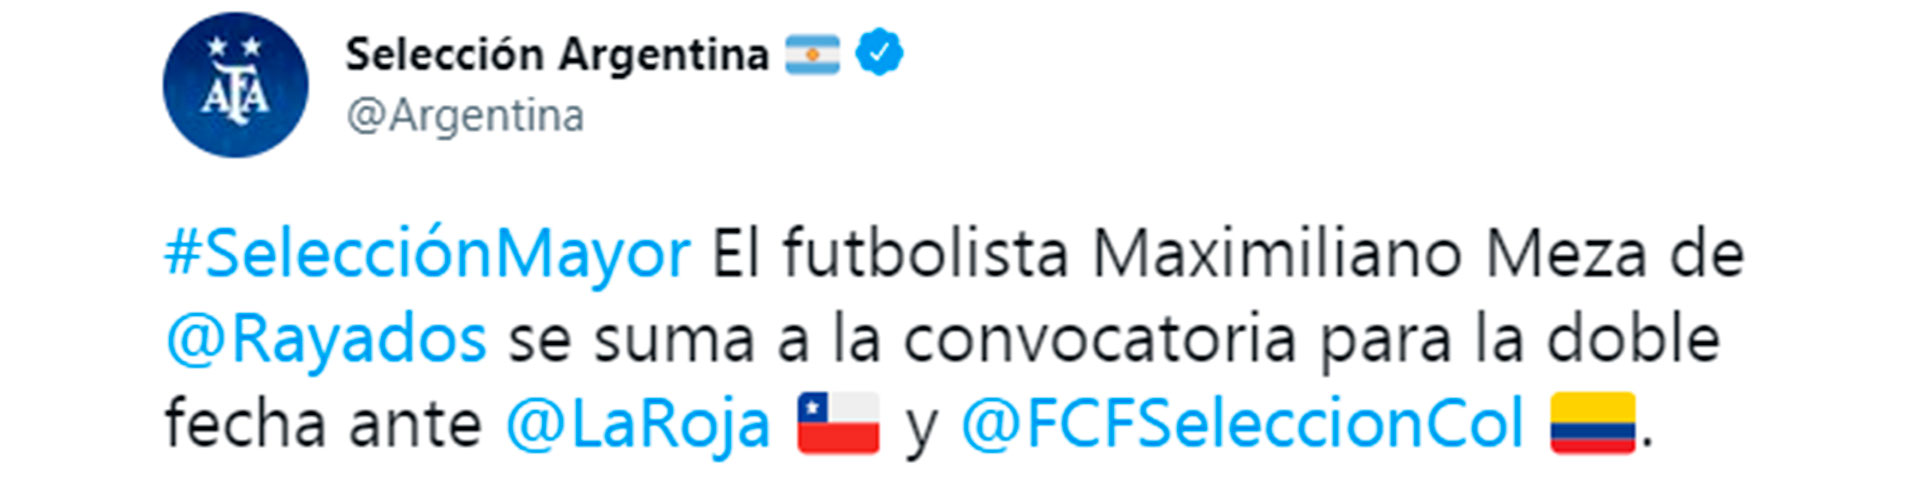 El posteo de la selección argentina para informar la convocatoria de Meza